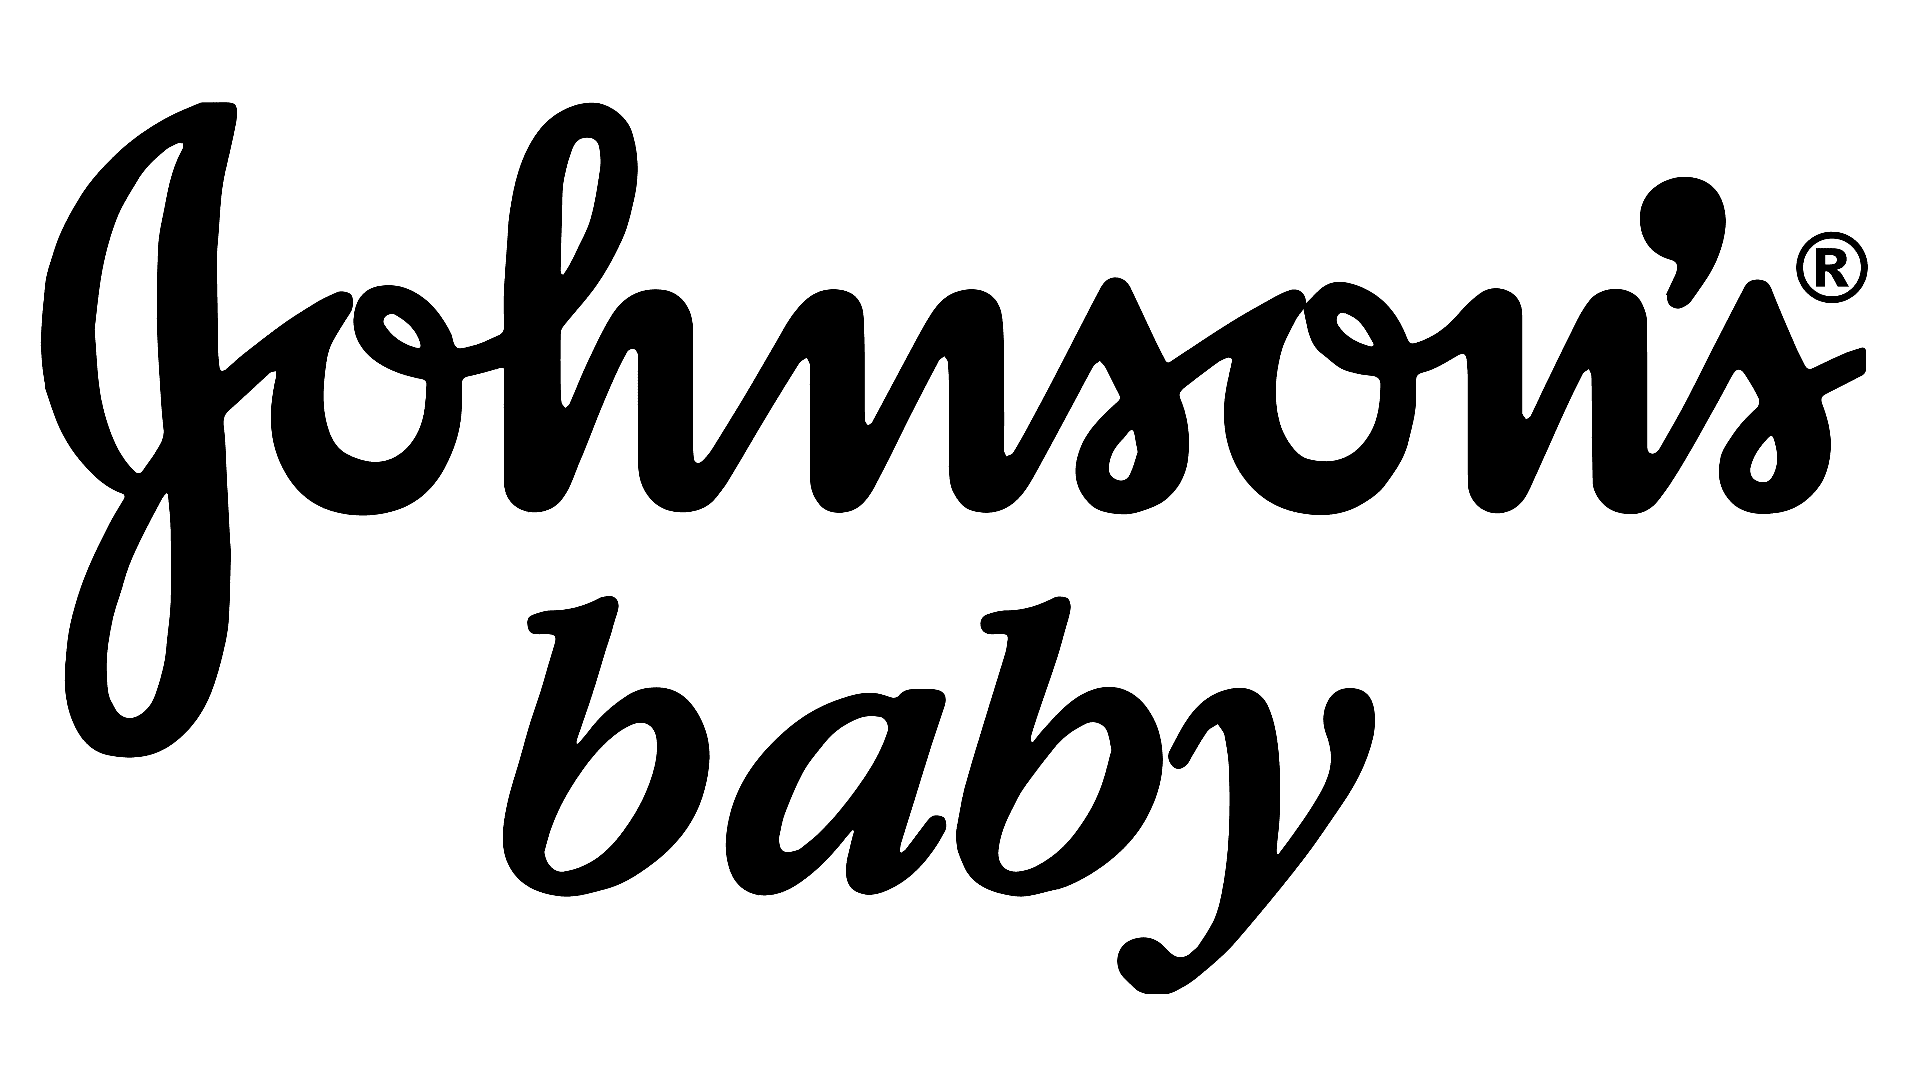 العلامة التجارية: Johnson's Baby